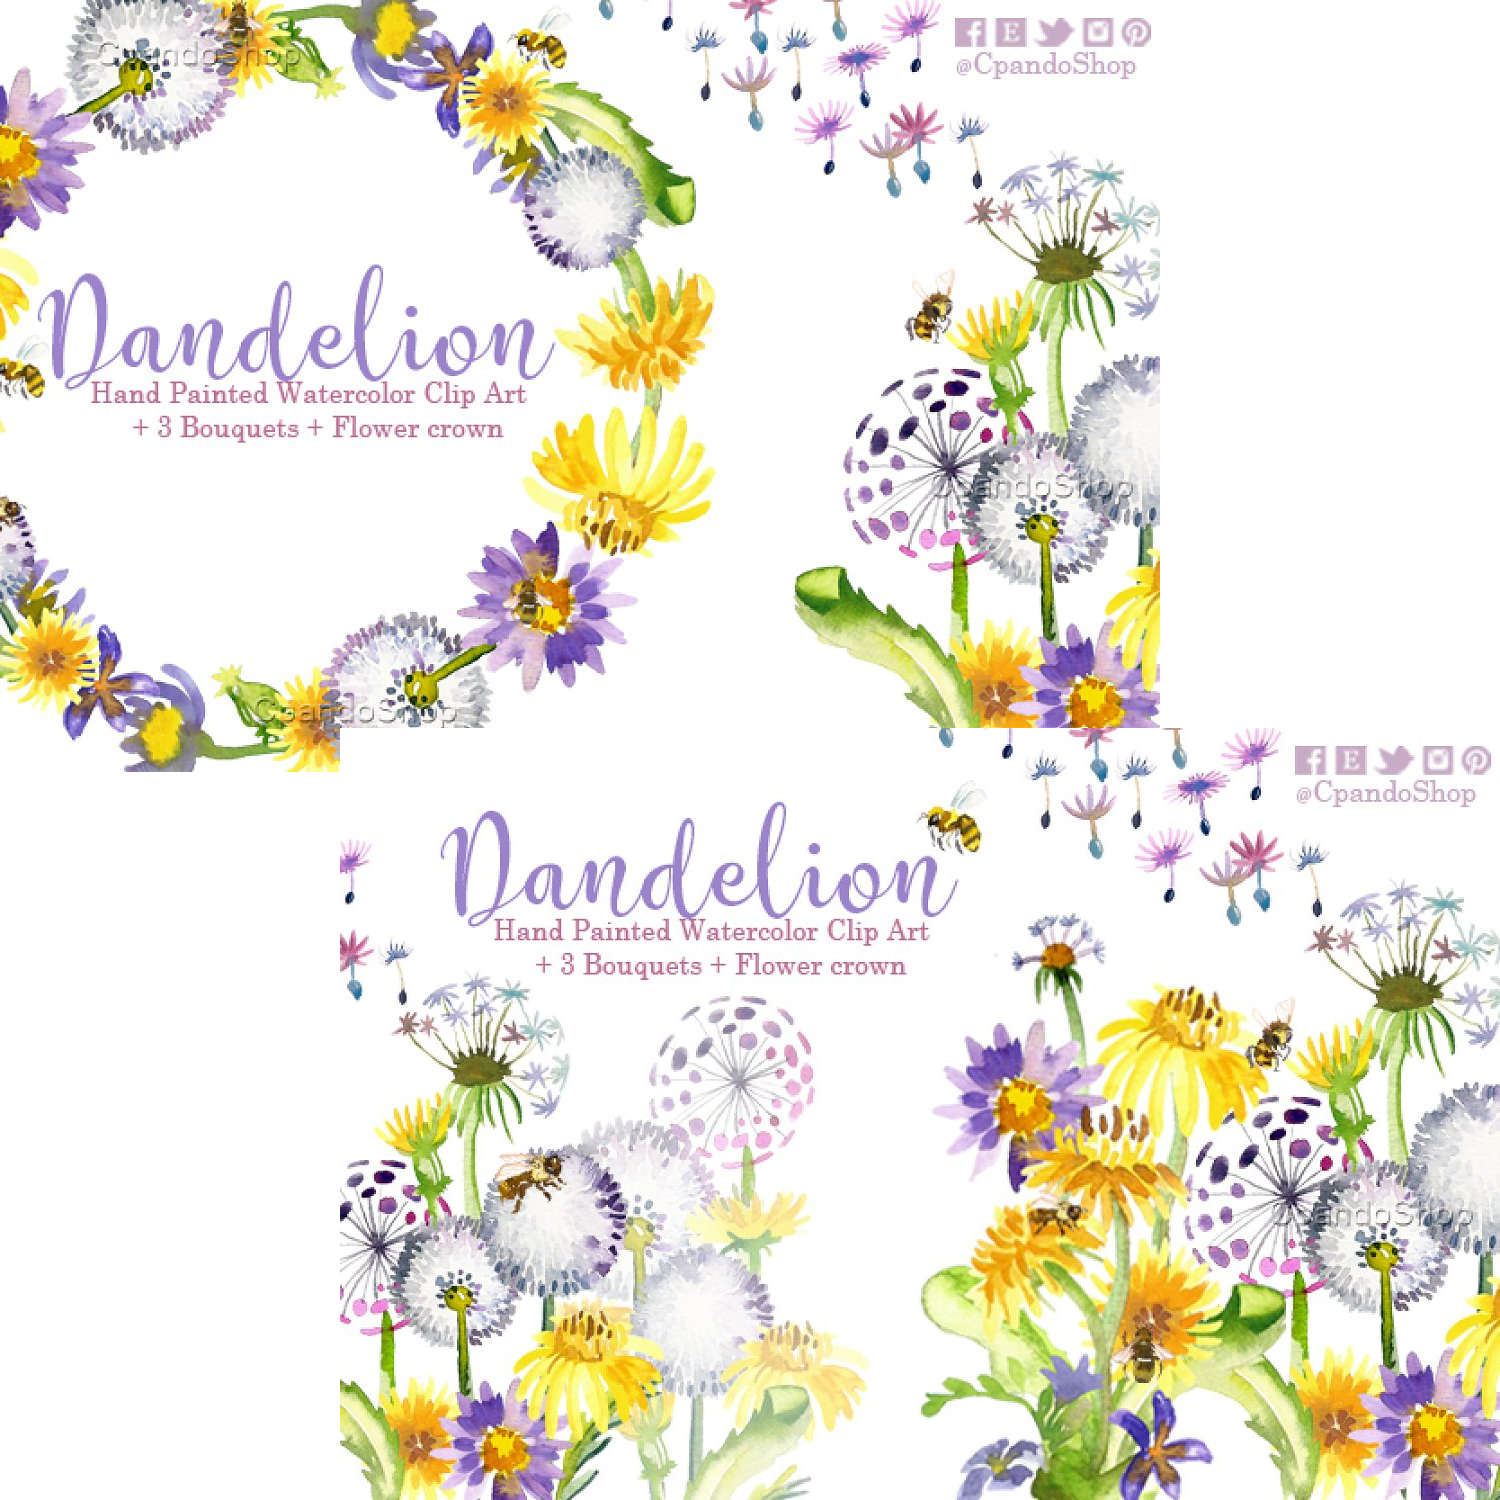 https://masterbundles.com/wp-content/uploads/edd/2022/06/02-dandelion-floral-watercolor-clipart-1500-1500.jpg